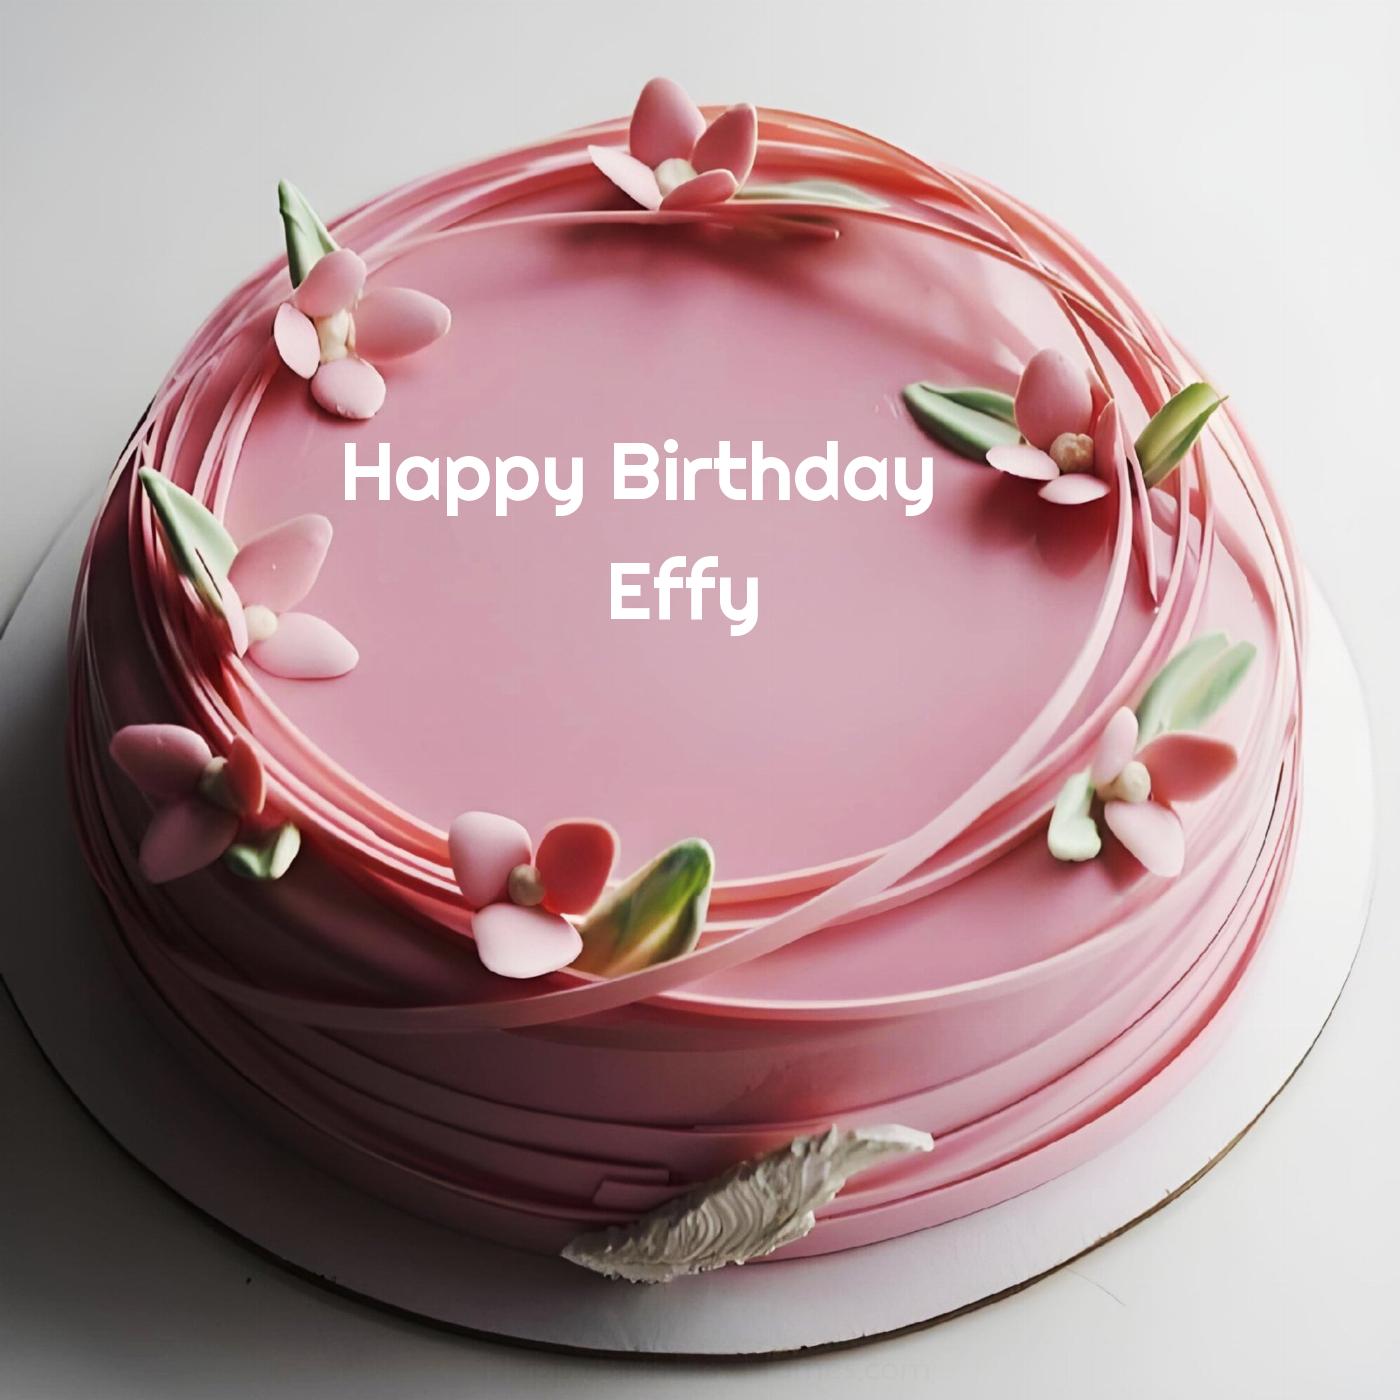 Happy Birthday Effy Pink Flowers Cake